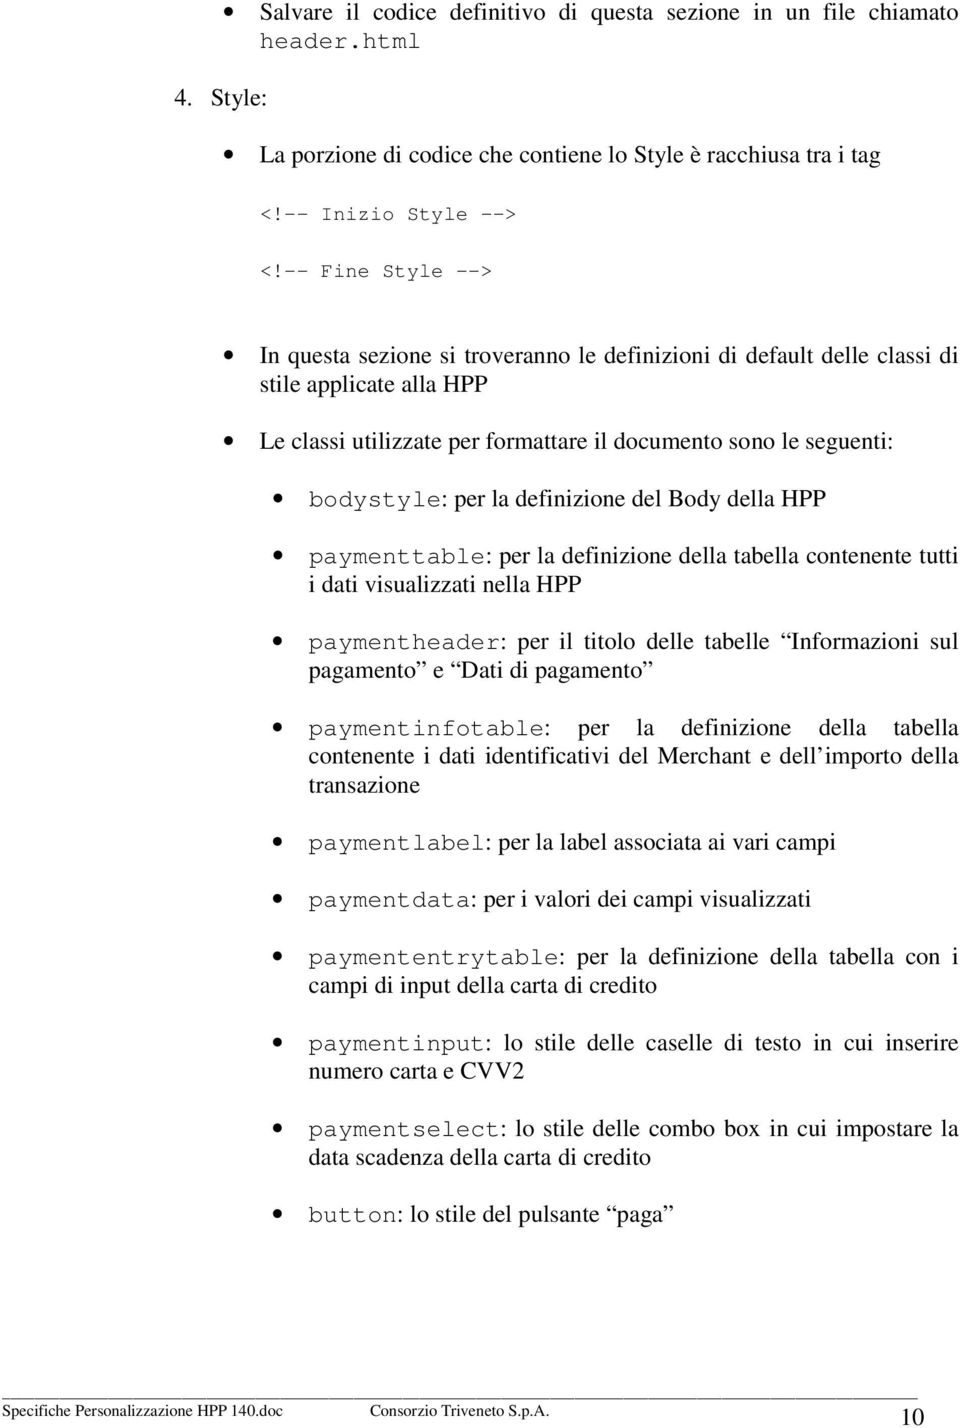 la definizione del Body della HPP paymenttable: per la definizione della tabella contenente tutti i dati visualizzati nella HPP paymentheader: per il titolo delle tabelle Informazioni sul pagamento e